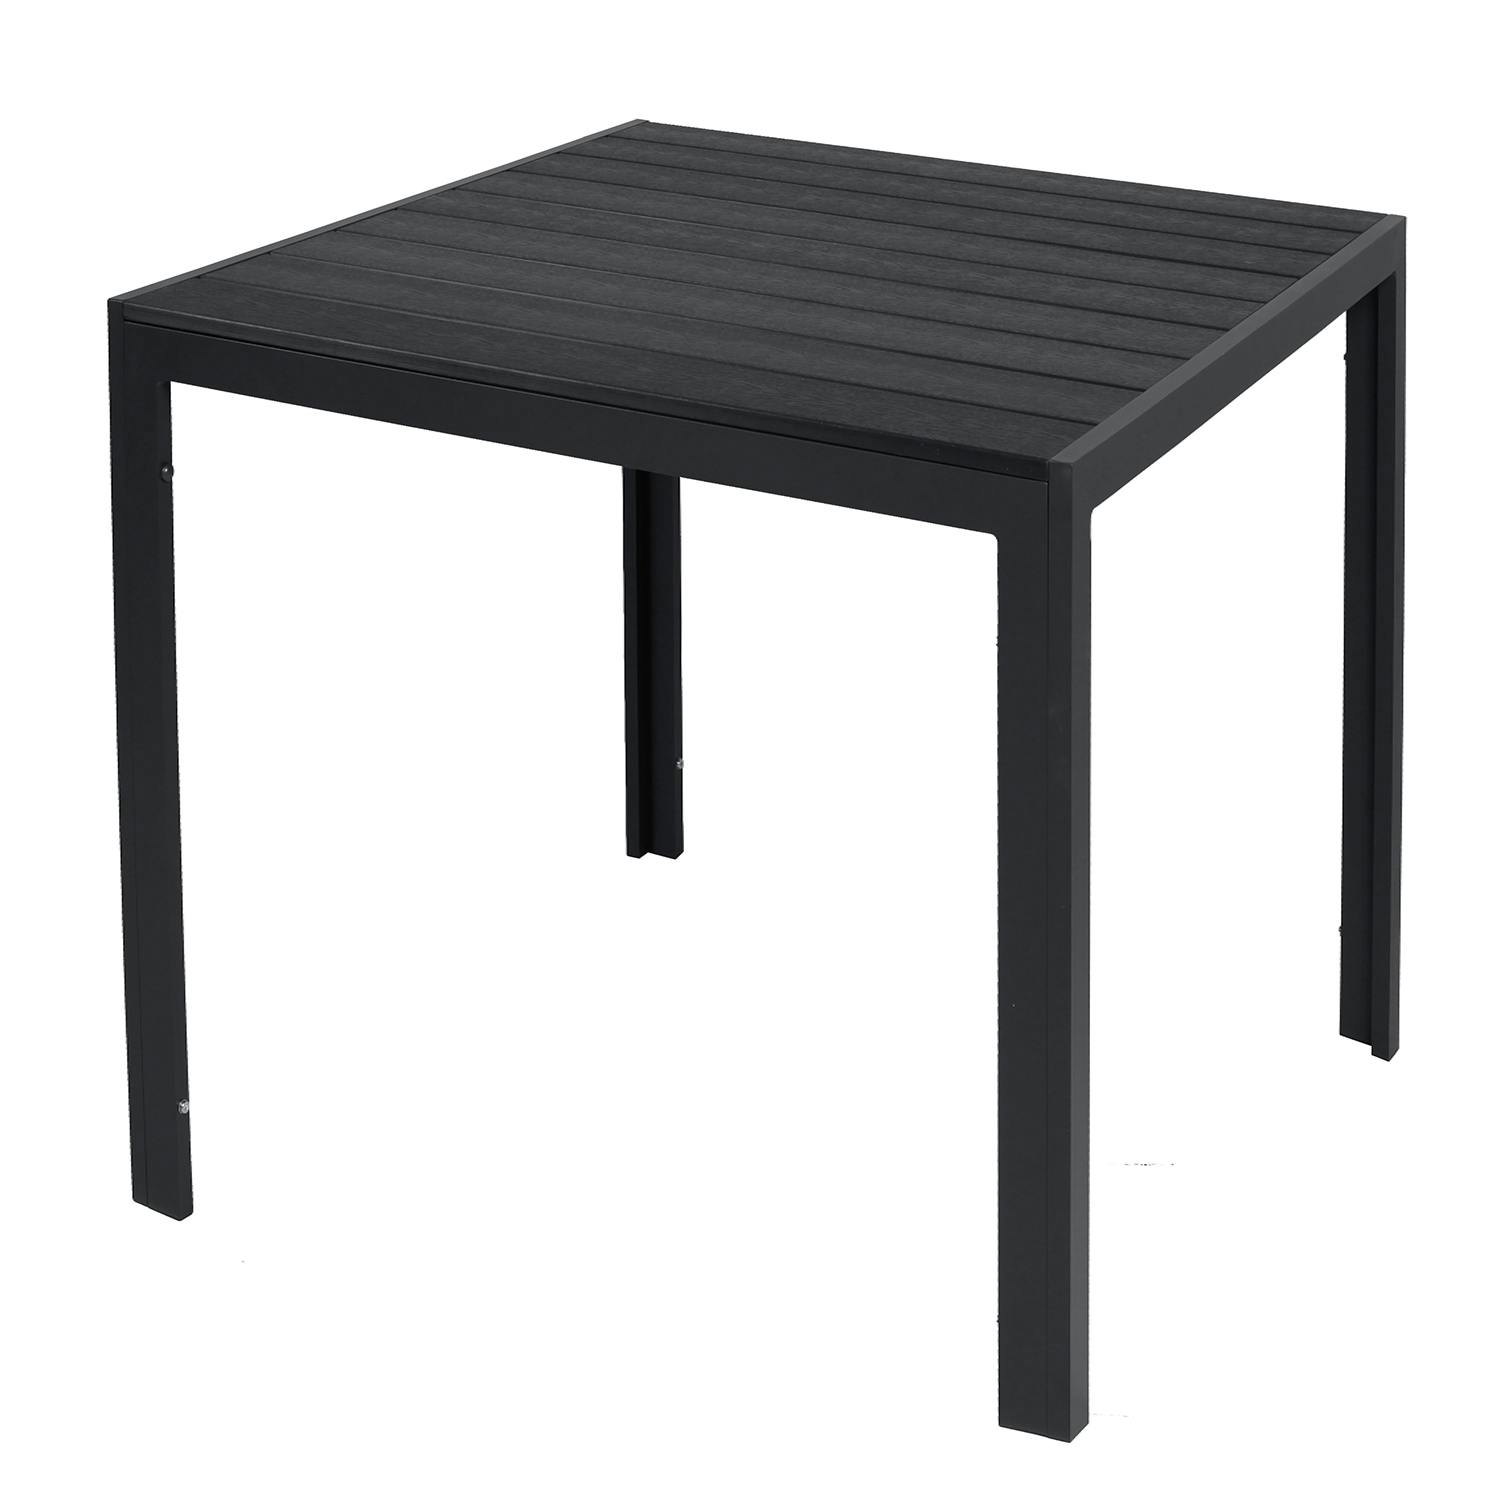 Gartentisch Non-Wood anthrazit Aluminium schwarz | / METRO und 90x90cm Marktplatz